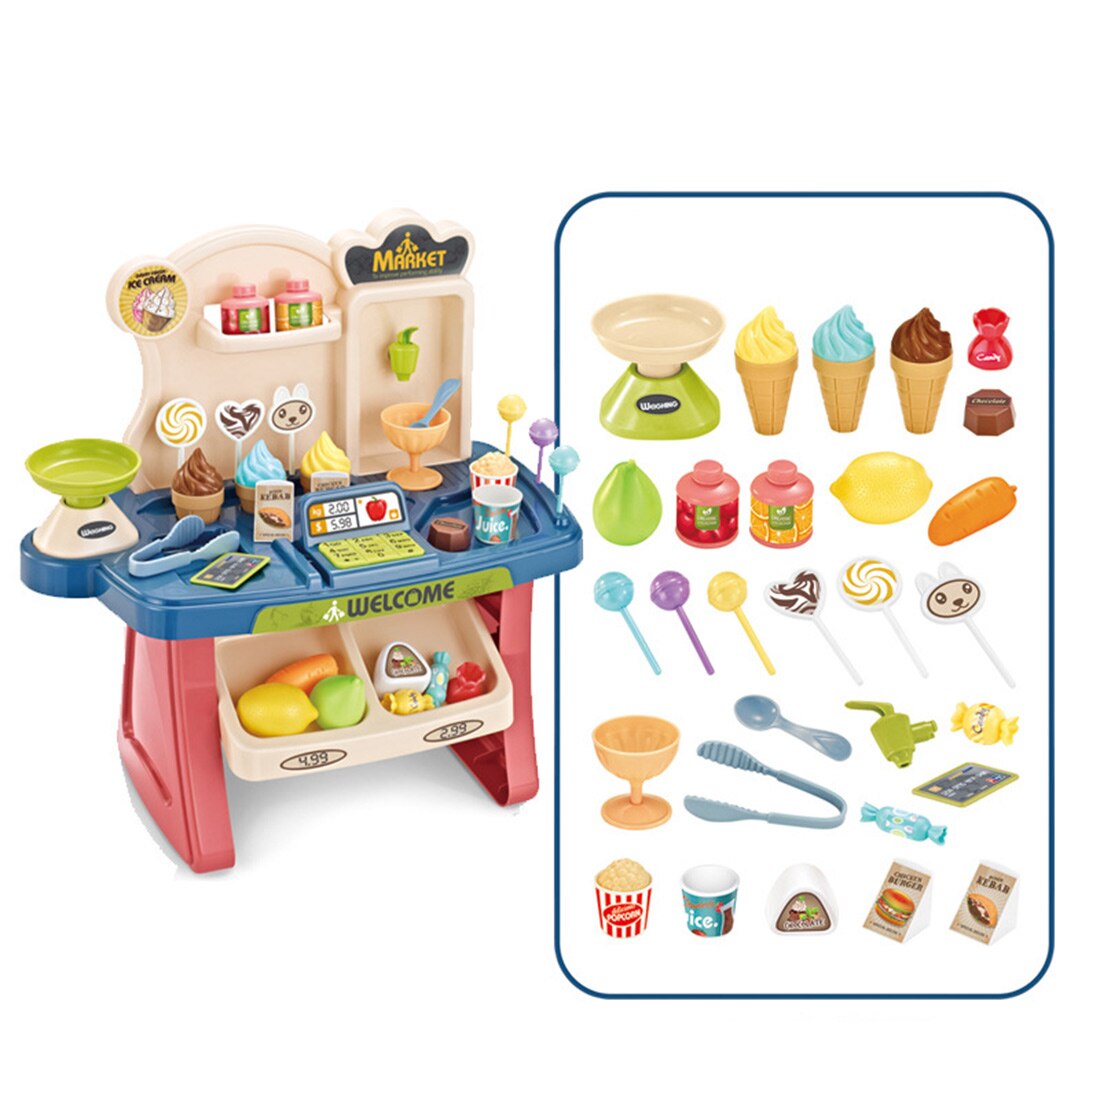 30Pcs Kinderen Pretend Play Simulatie Supermarkt Winkelen Speelgoed Kassa Speeltoestel Voor Kinderen Educatief Speelgoed-Blauw Roze